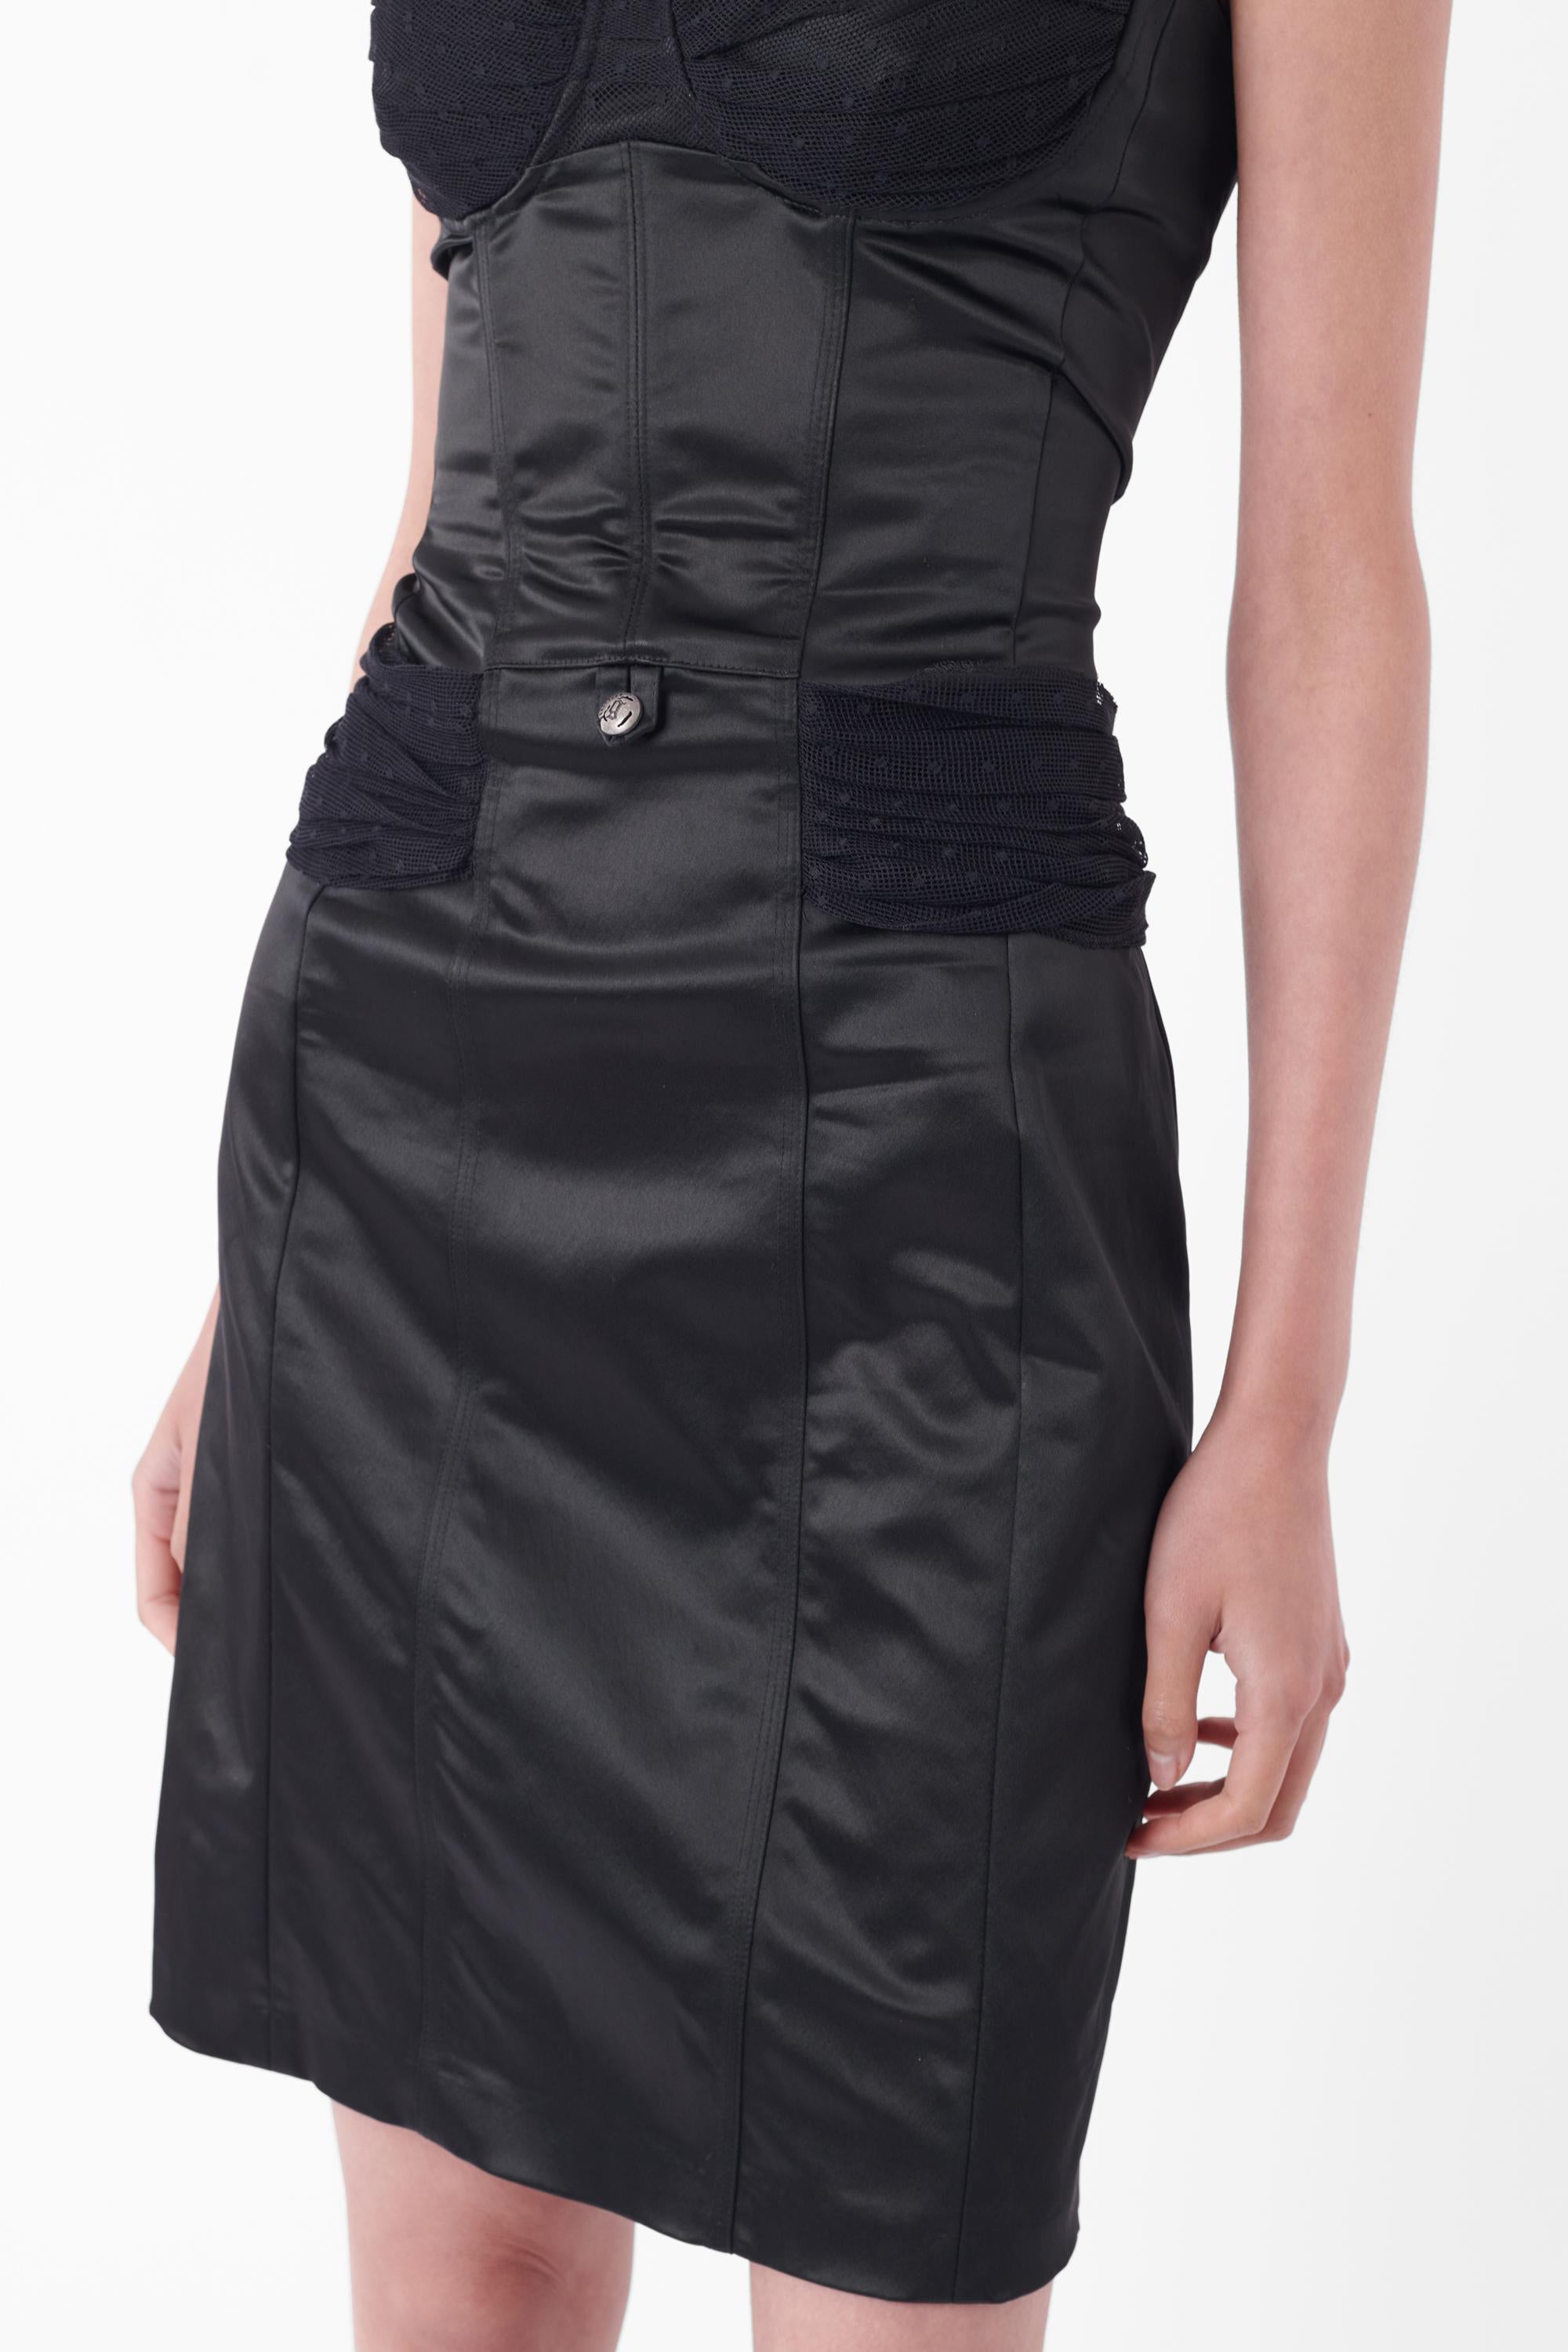 John Galliano Vintage Early 2000's Black Bustier Dress Pour femmes en vente